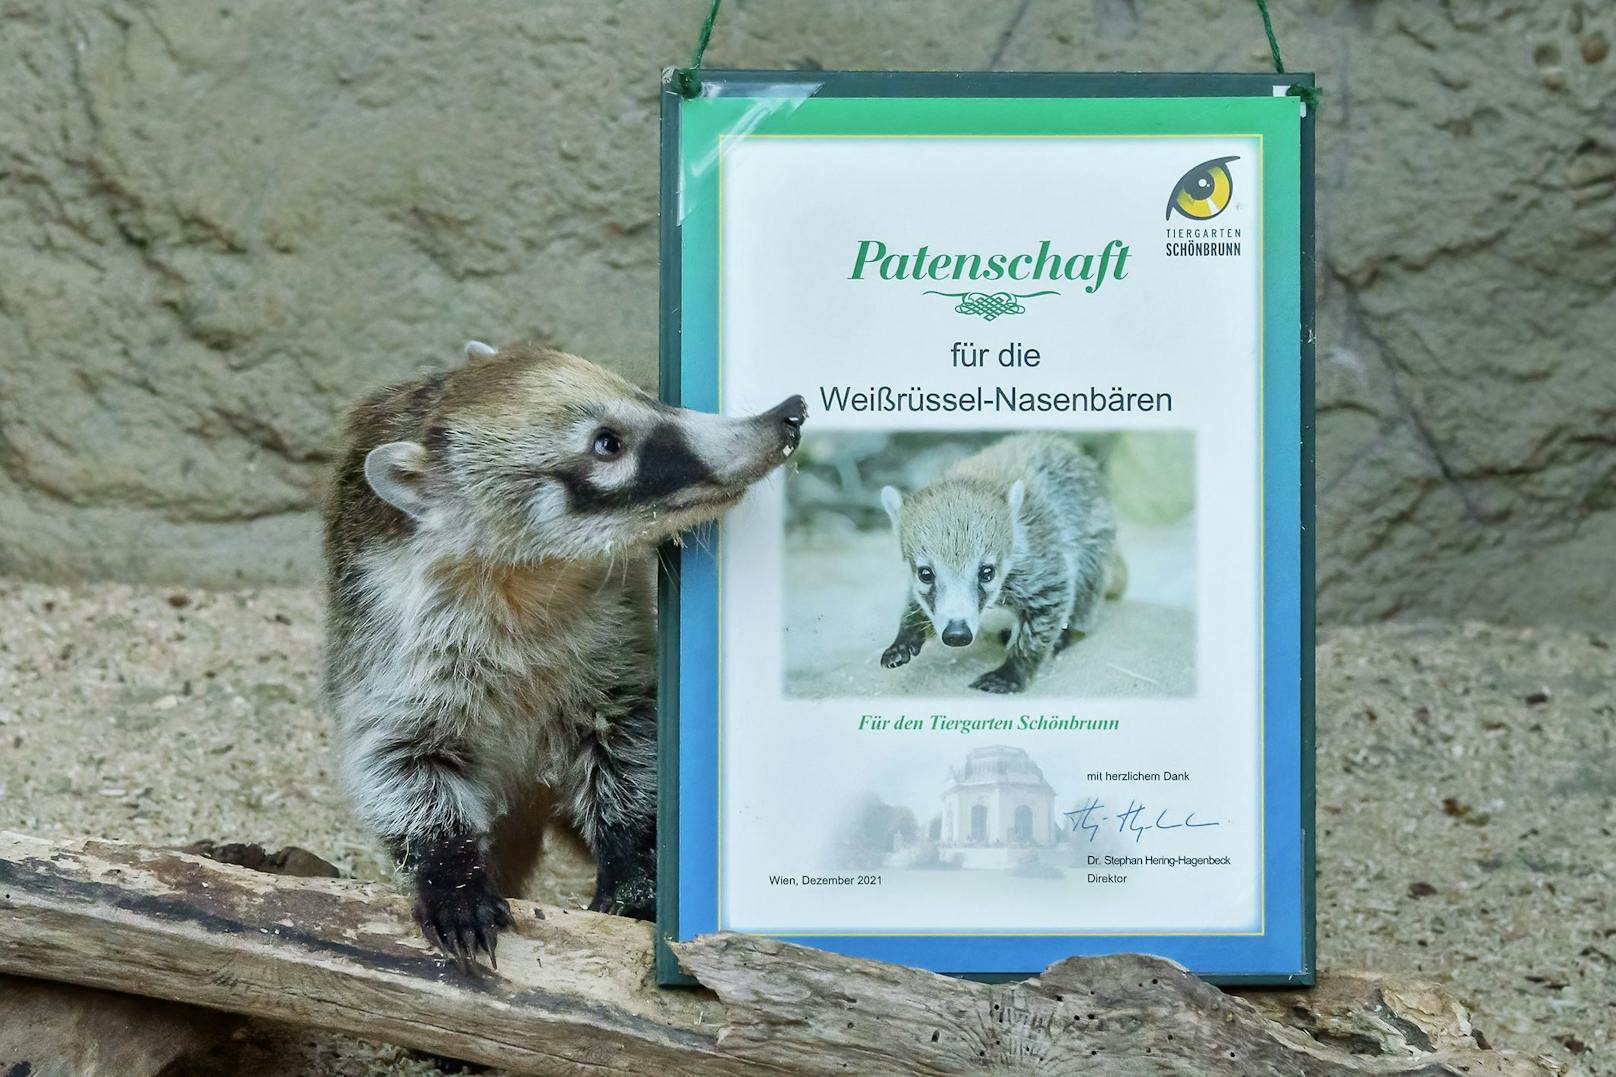 Momentan gibt es 450 - auch prominente - Tierparten für die Schönbrunner Zootiere.&nbsp; 